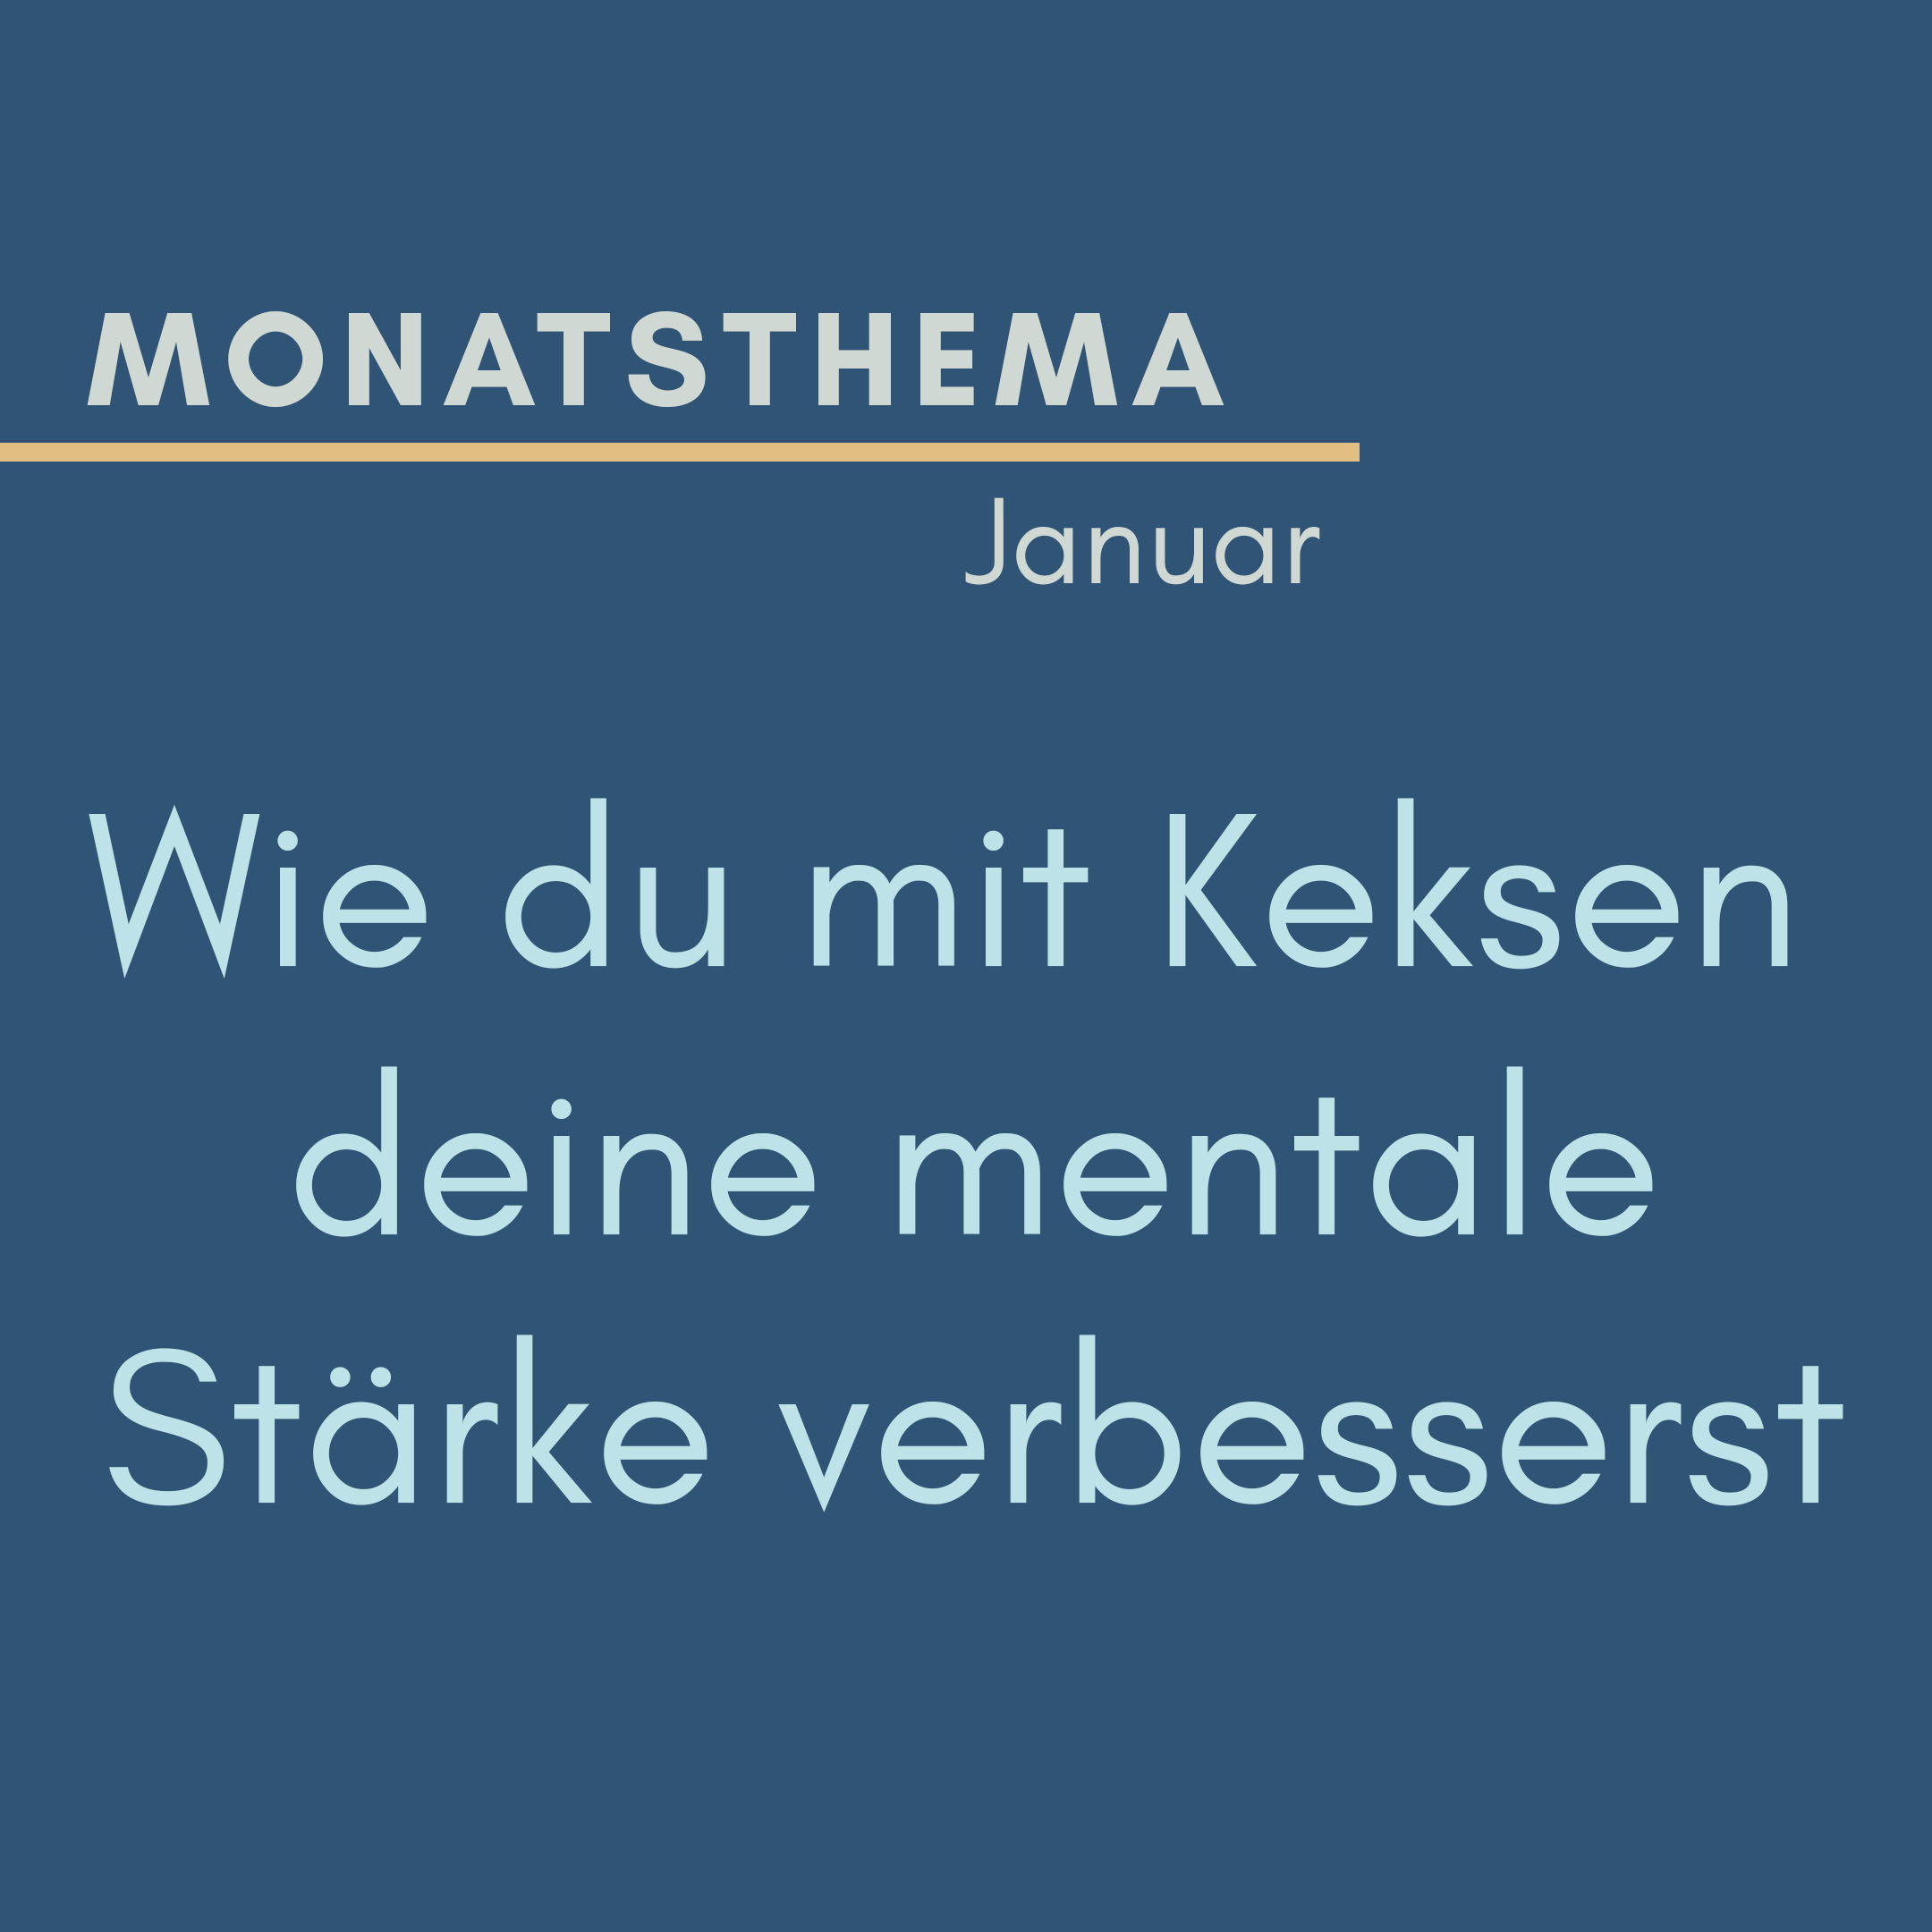 blauer Hintergrund mit Text: Monatsthema Januar, Wie du mit Keksen deine mentale Stärke verbesserst